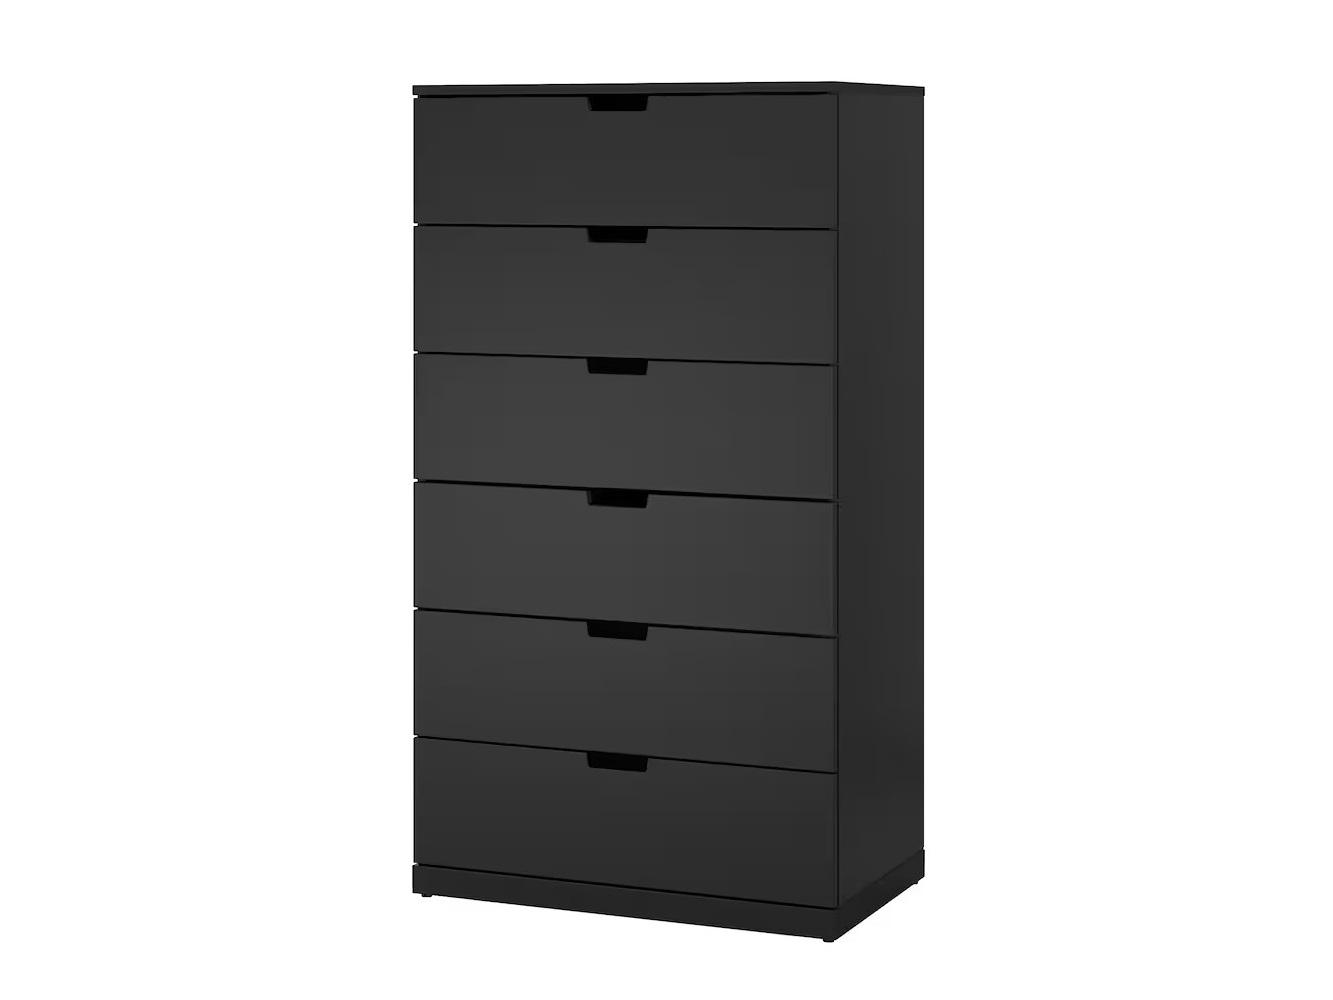 Комод Нордли 27 black ИКЕА (IKEA) изображение товара